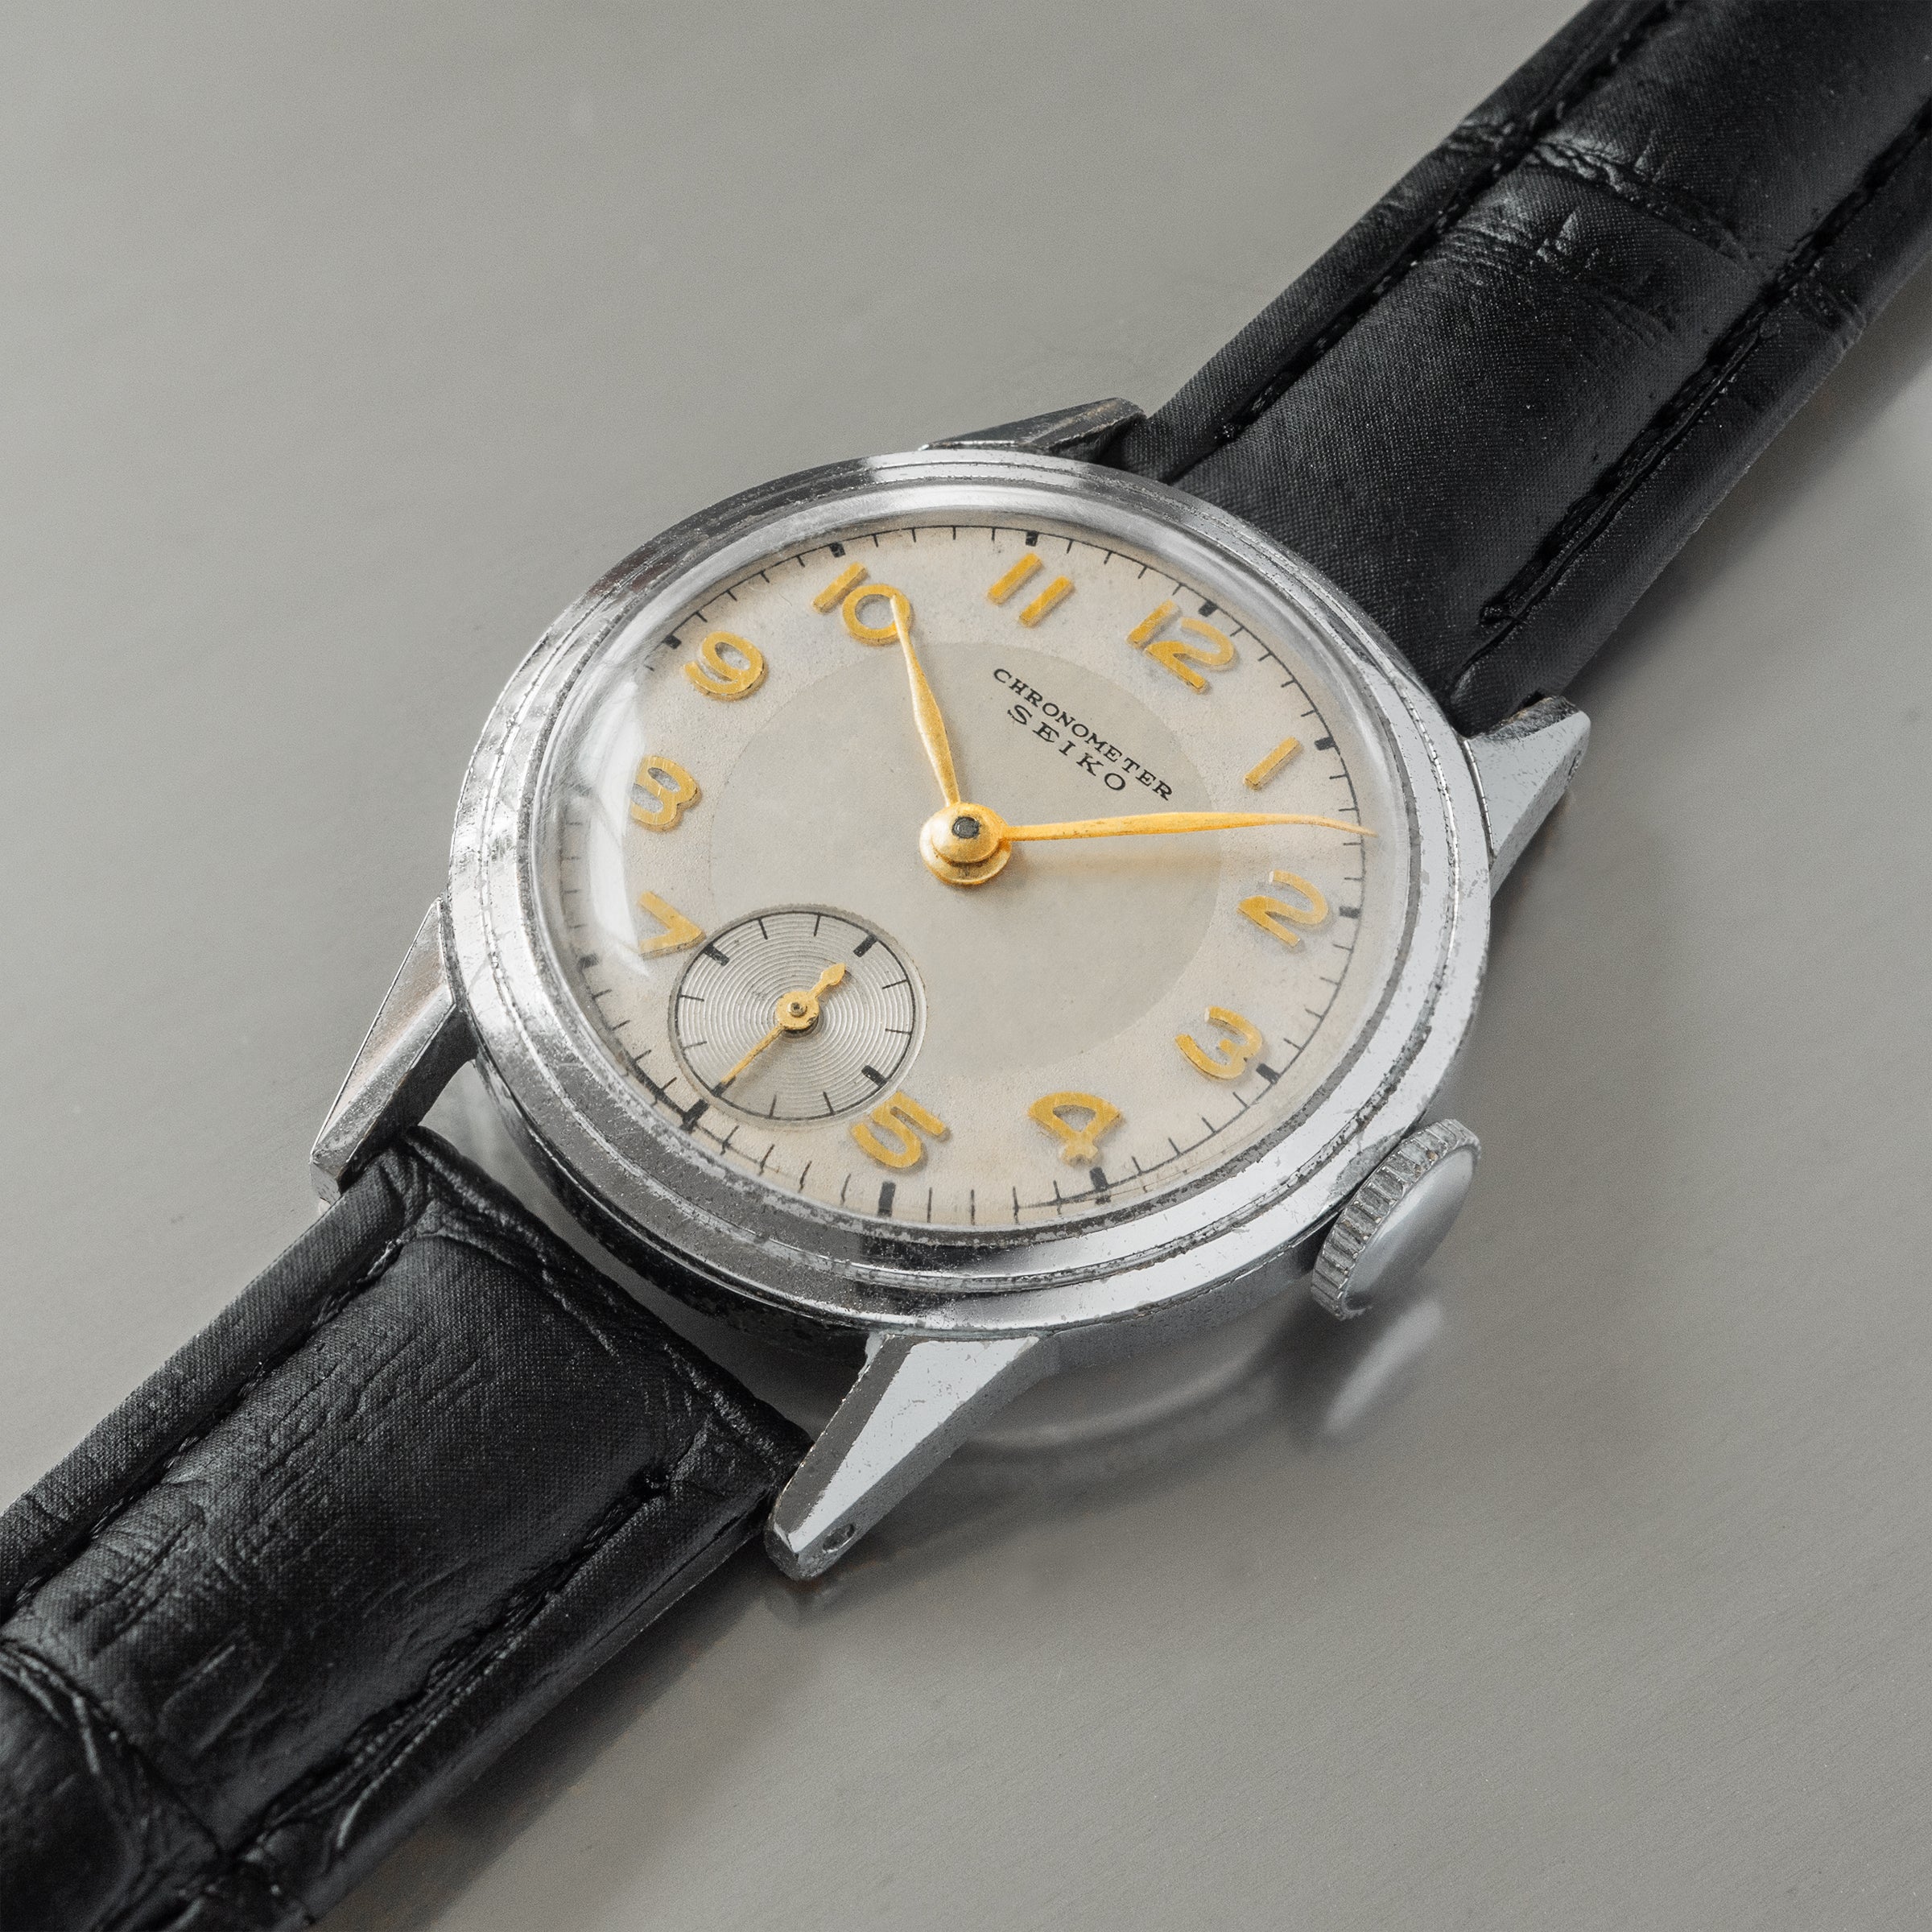 No. 524 / Seiko Sm. Sec. Chronometer - 1952 – From Time To Times